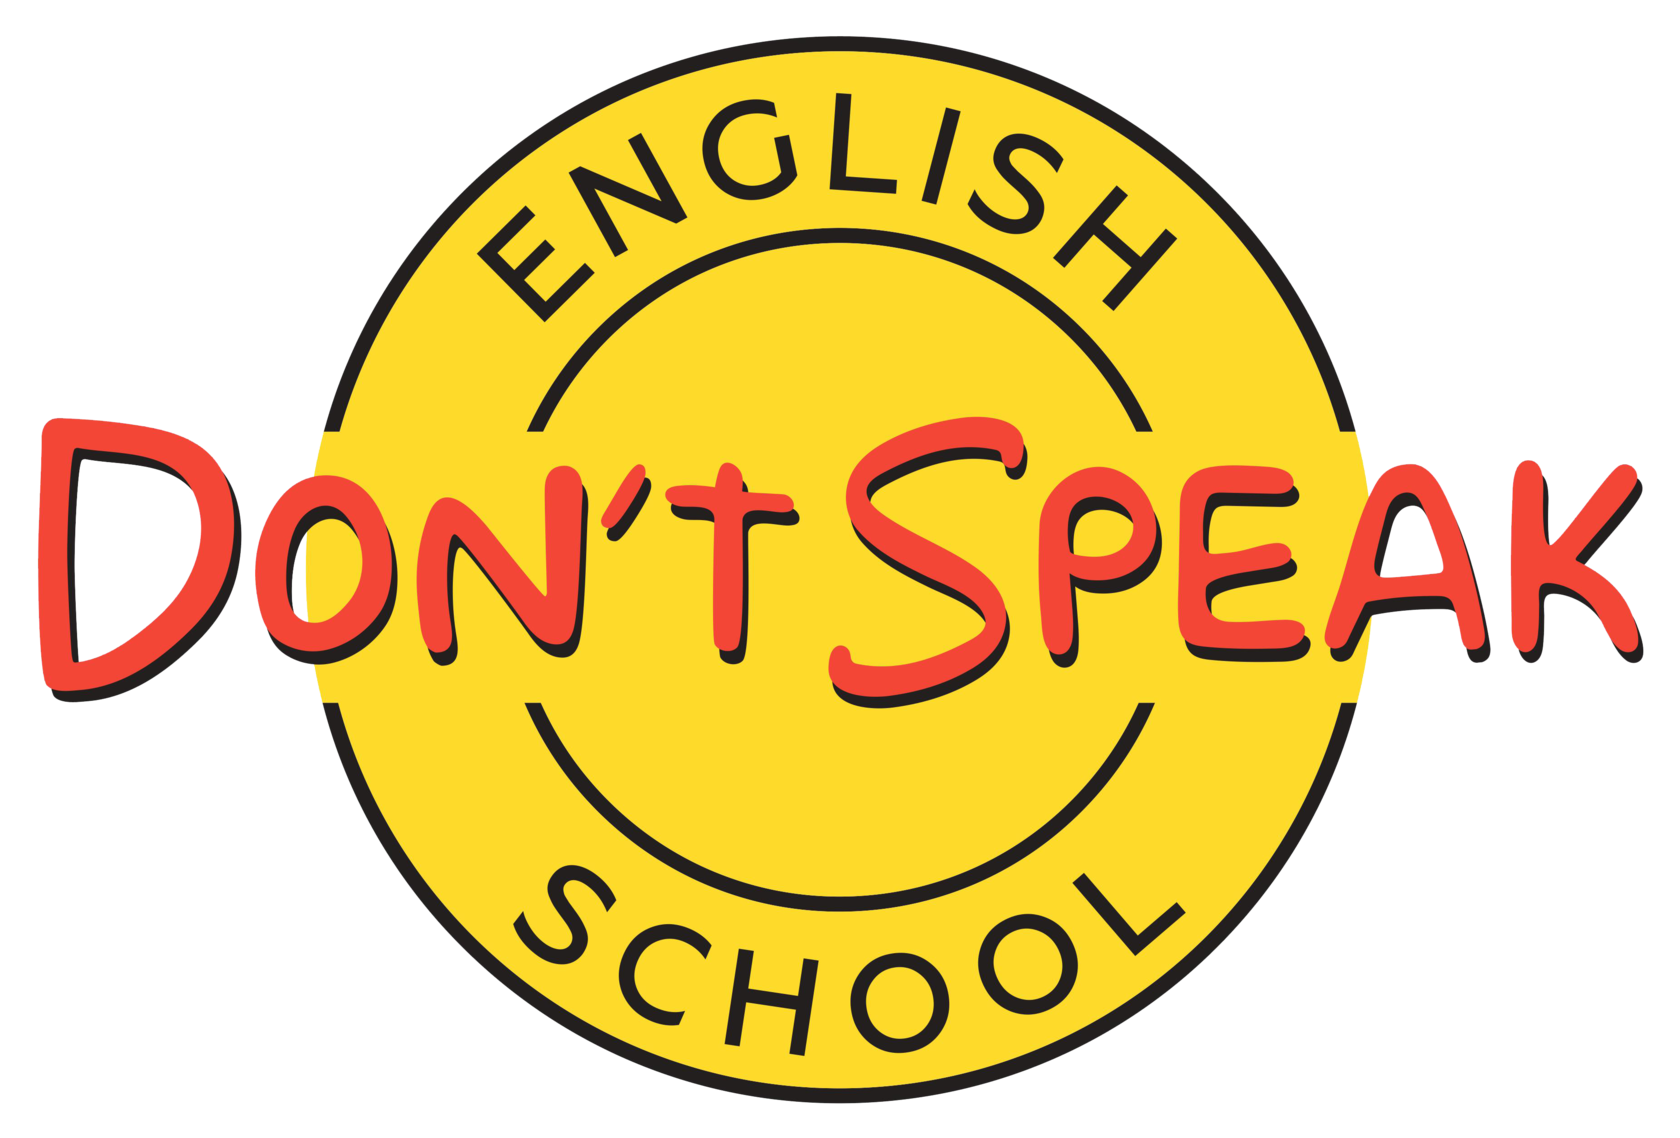 I don t can speak english. Школа донт спик. Don't speak школа английского языка. I don't speak English школа. Don’t speak подкаст.